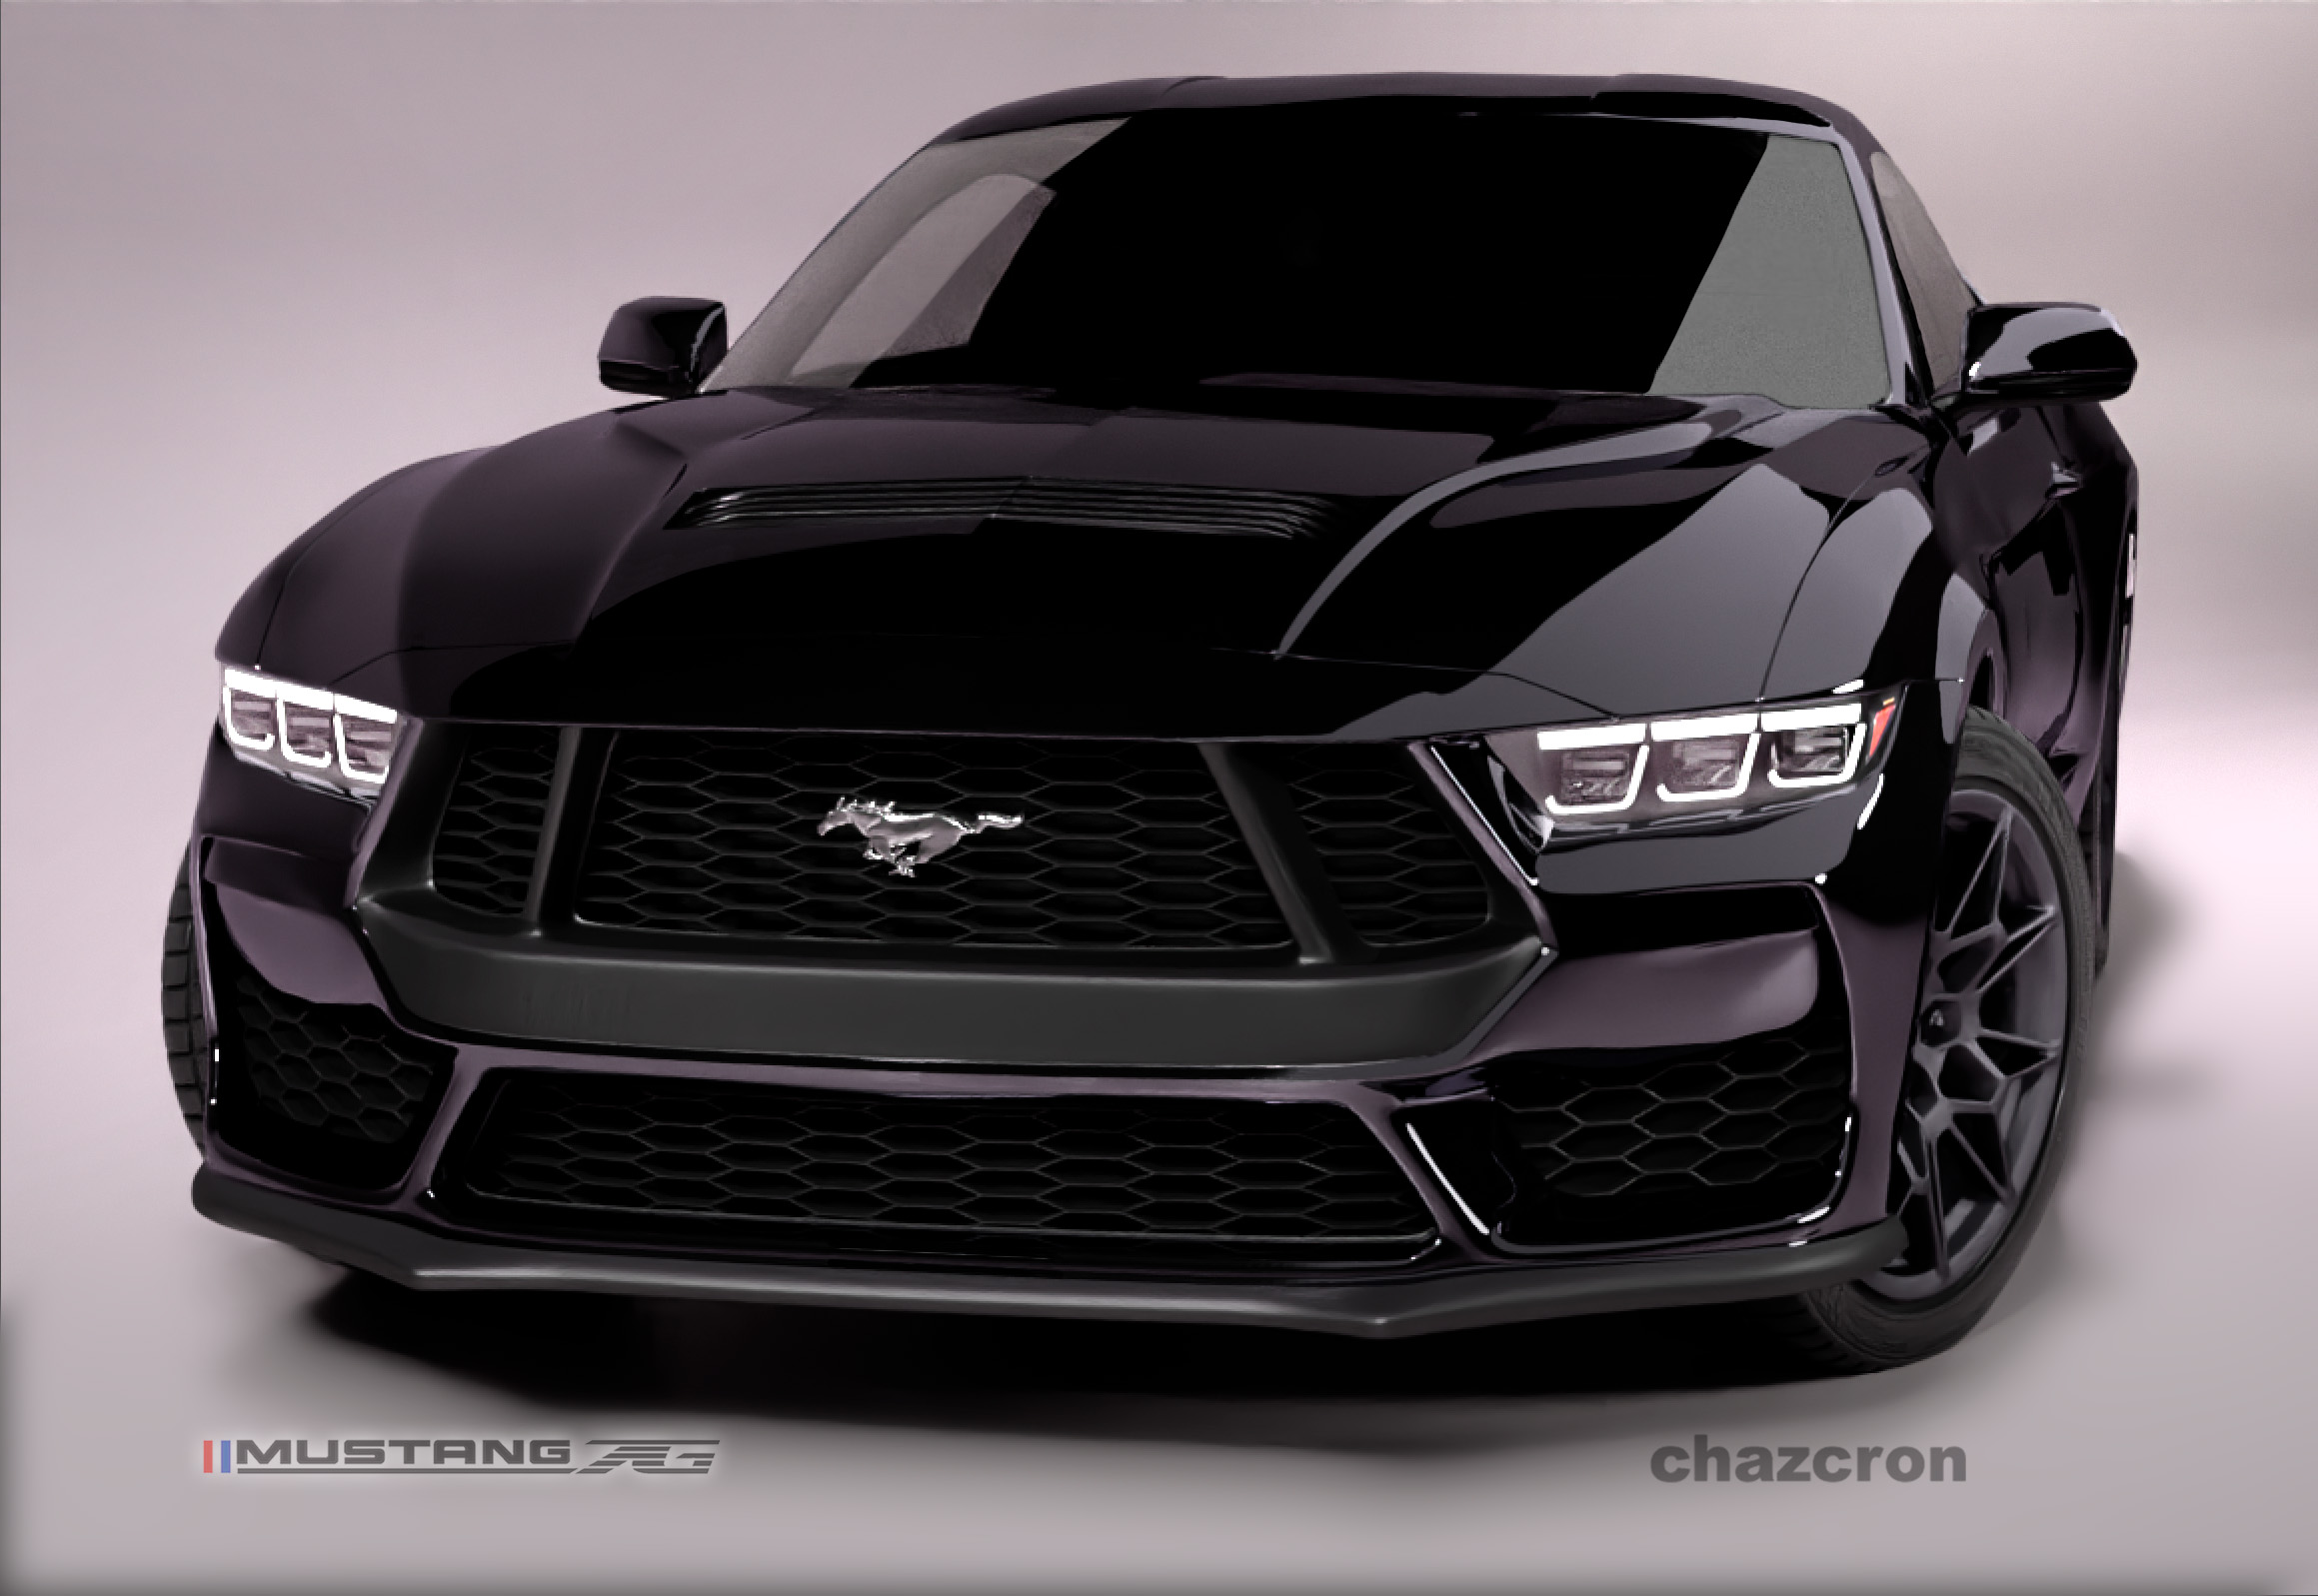 S650 Mustang chazcron weighs in... 7th gen 2023 Mustang S650 3D model & renderings in several colors! BlackShee